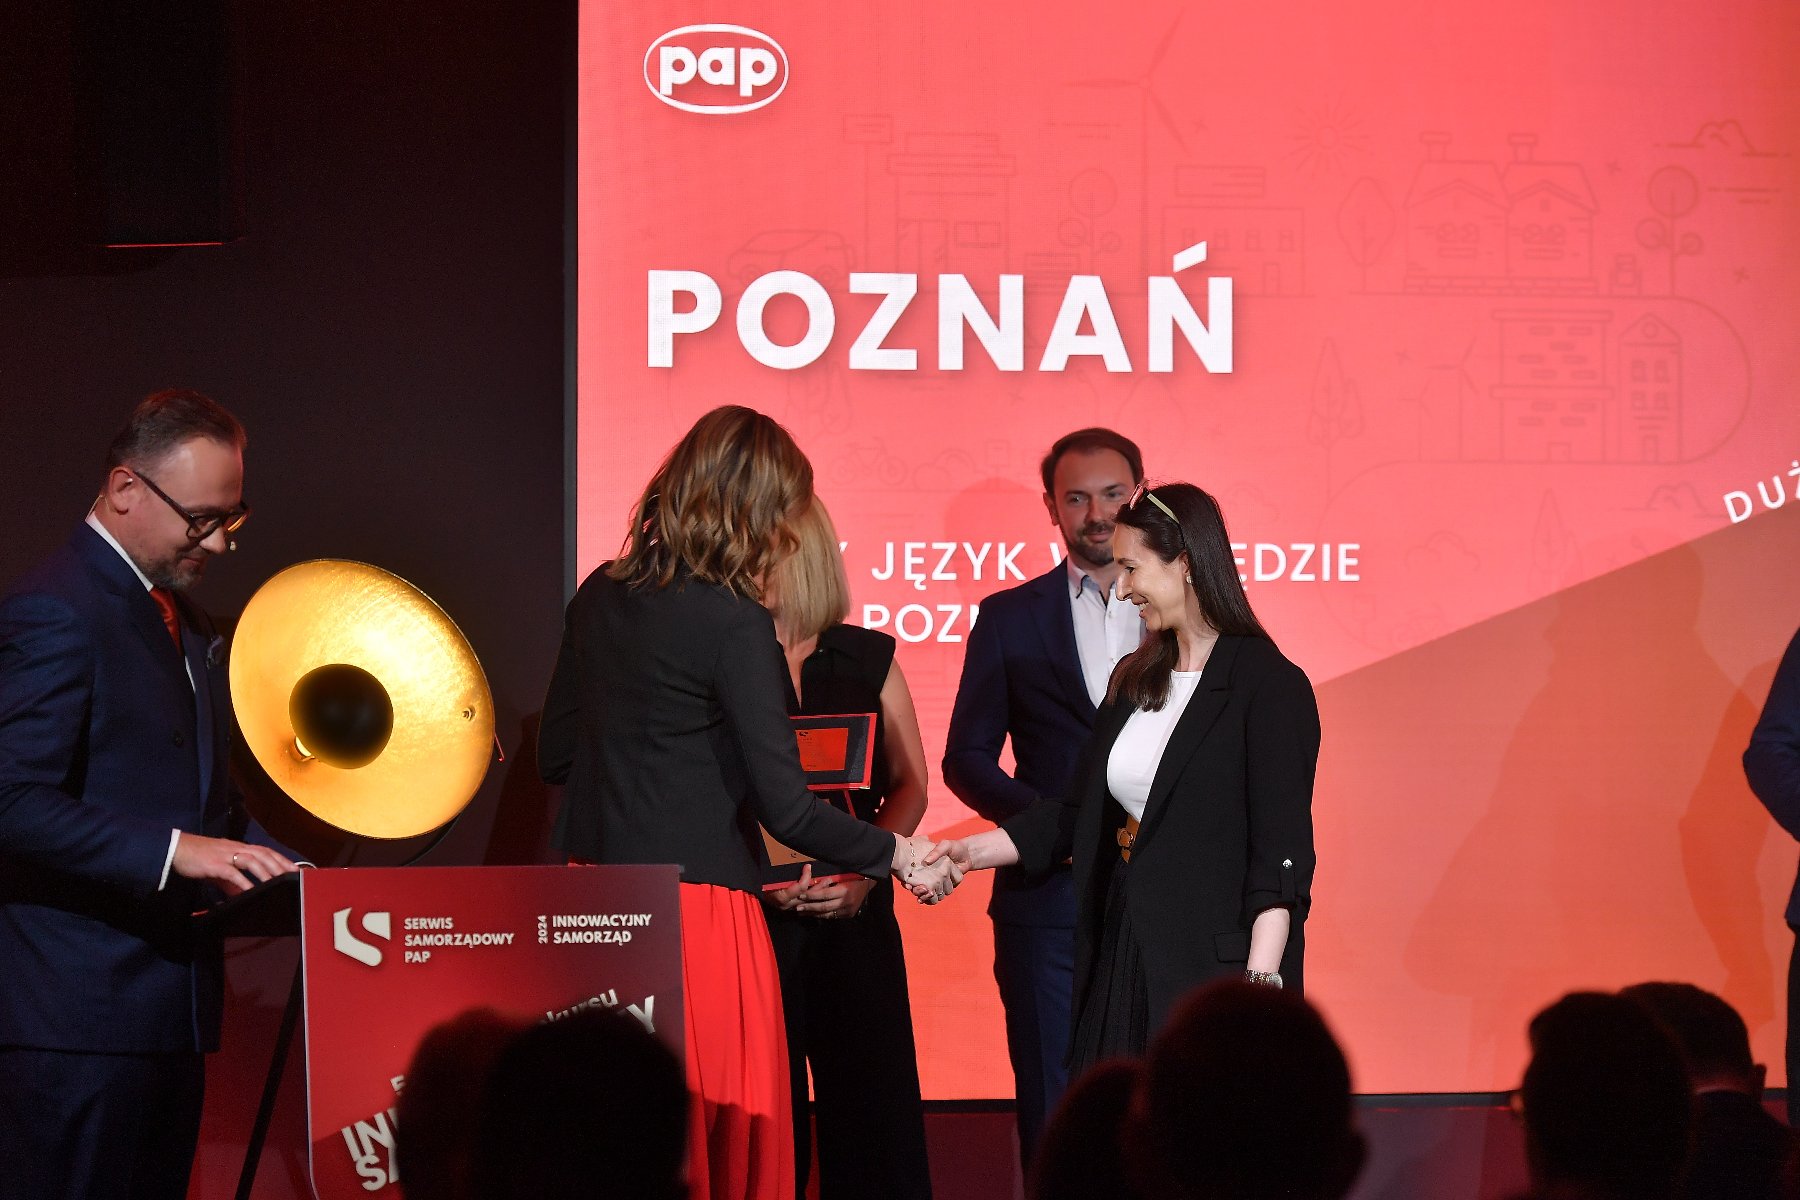 Na pierwszym planie dwie kobiety uściskują dłonie. Jedna z nich wręcza drugiej nagrodę. Za nimi stoją 3 osoby. W tle duży czerwony plakat, na którym wyświetla się napis "Poznań". - grafika artykułu